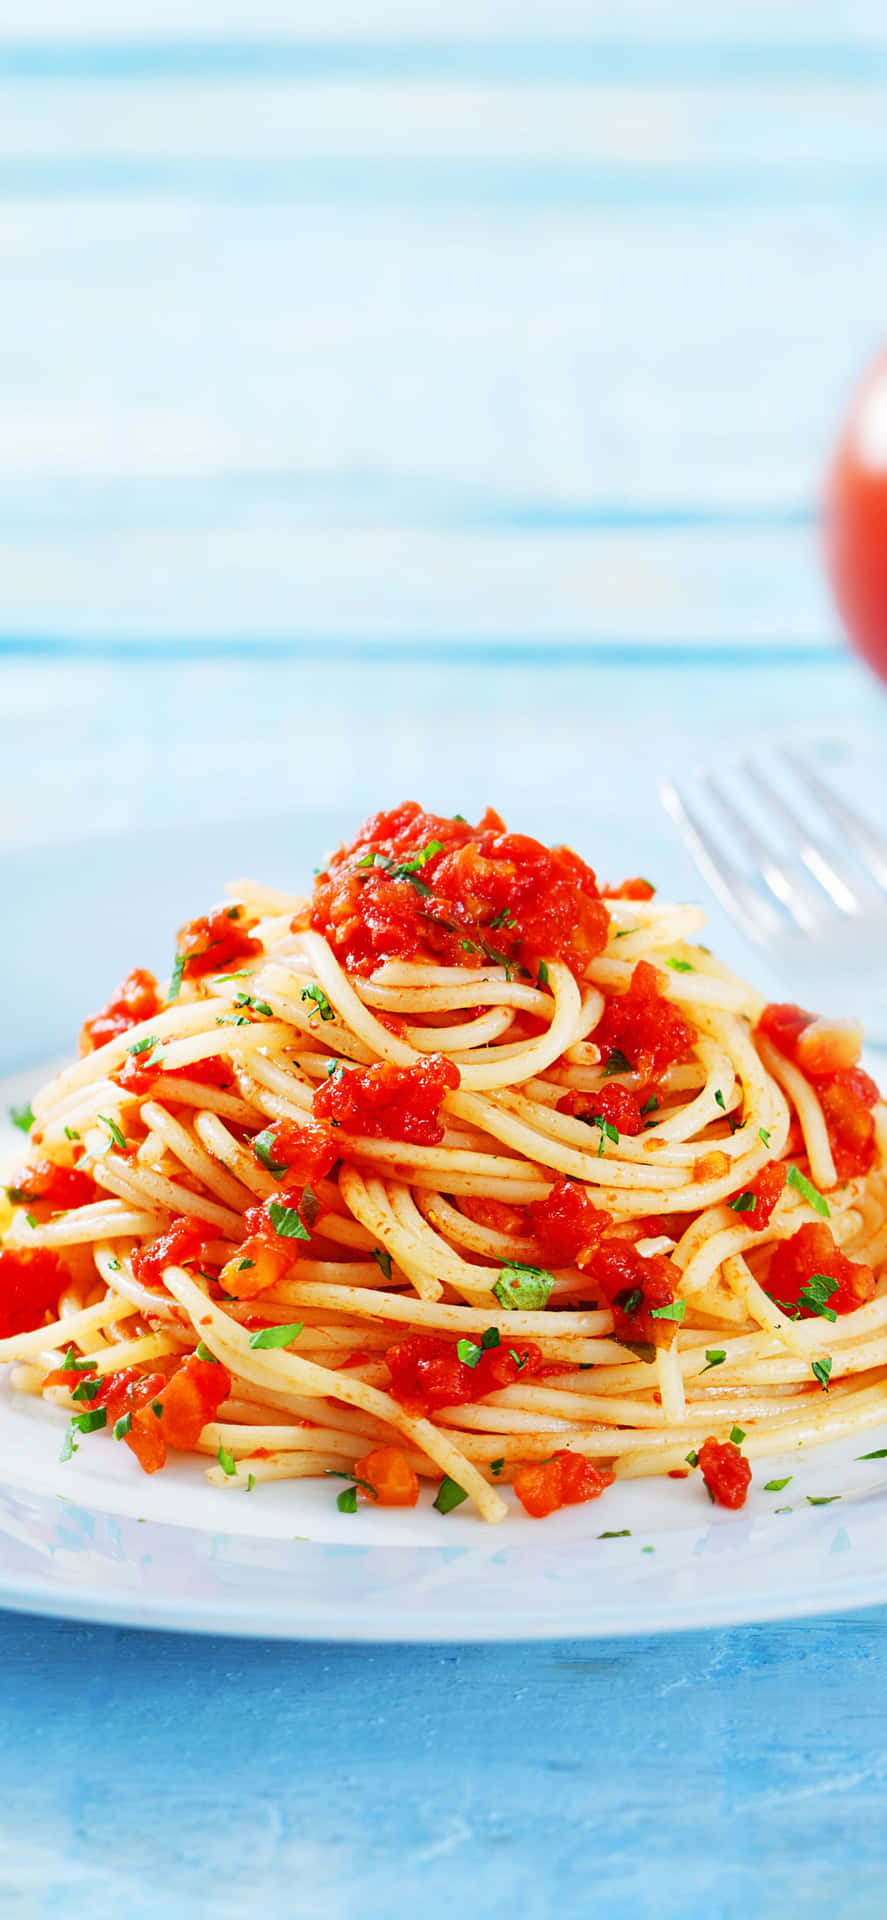 Sfondoiphone X Con Spaghetti E Pezzetti Di Pomodoro